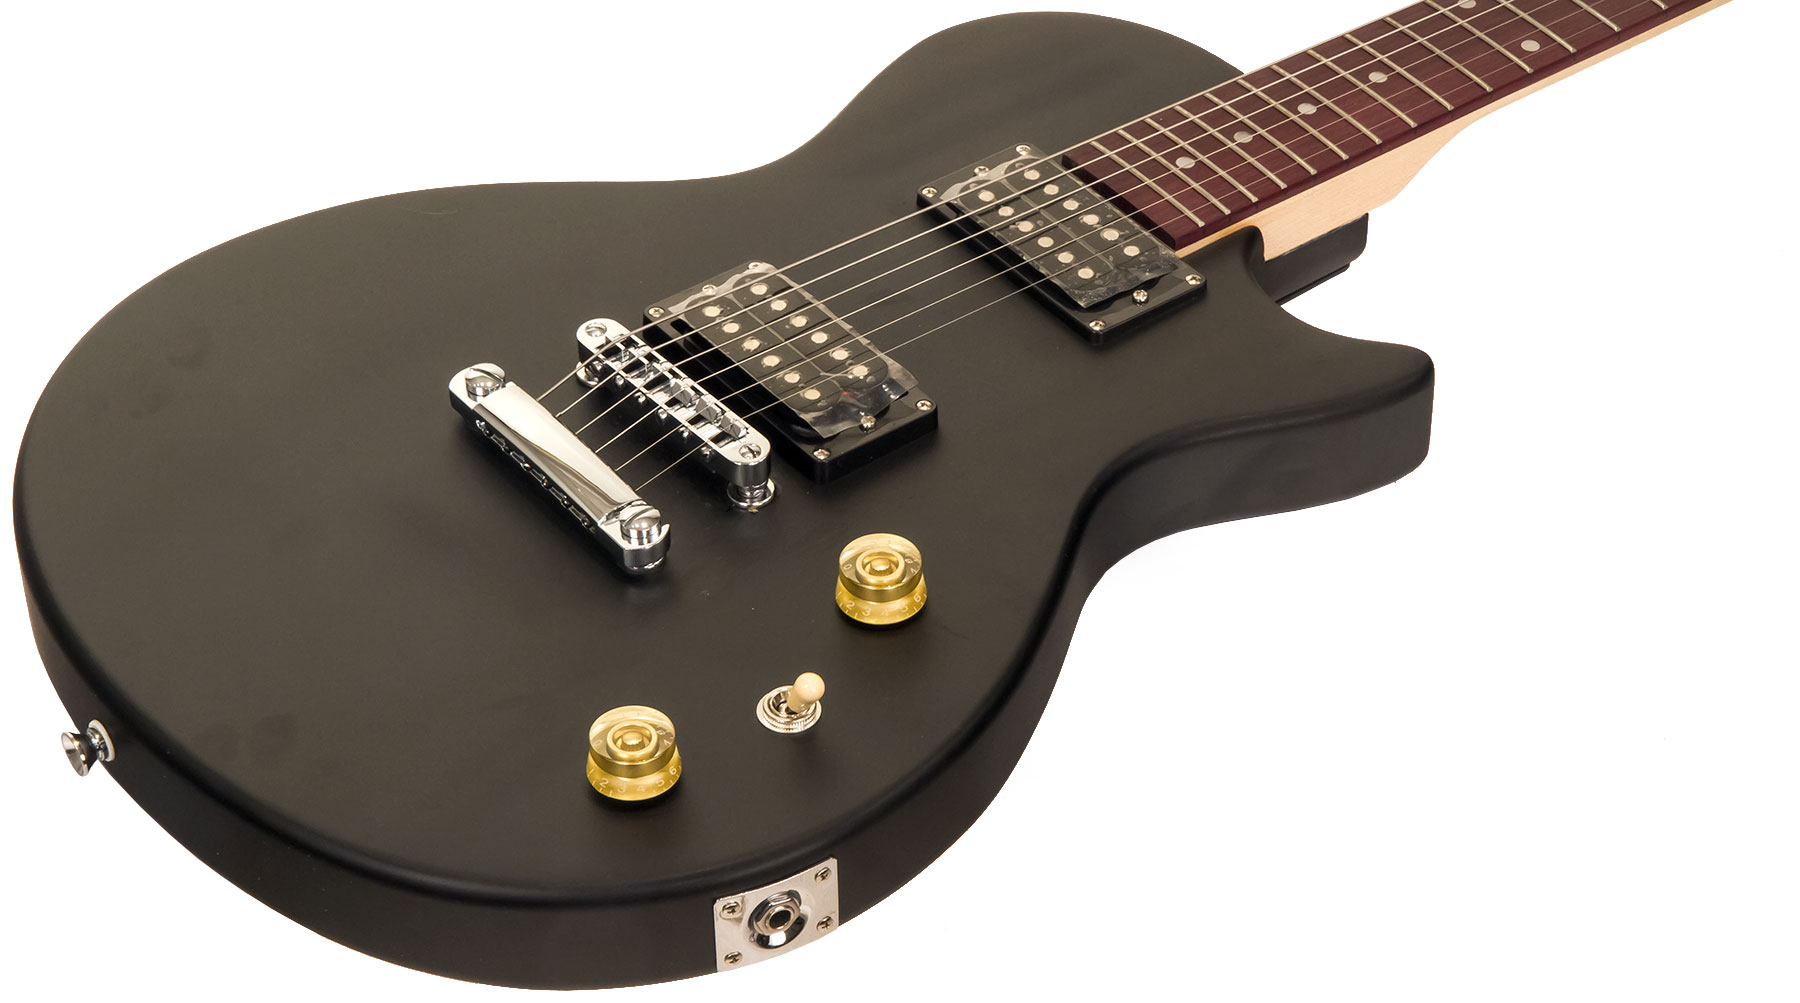 Eastone Lpl70 Hh Ht Pur - Black Satin - Guitarra eléctrica de corte único. - Variation 1